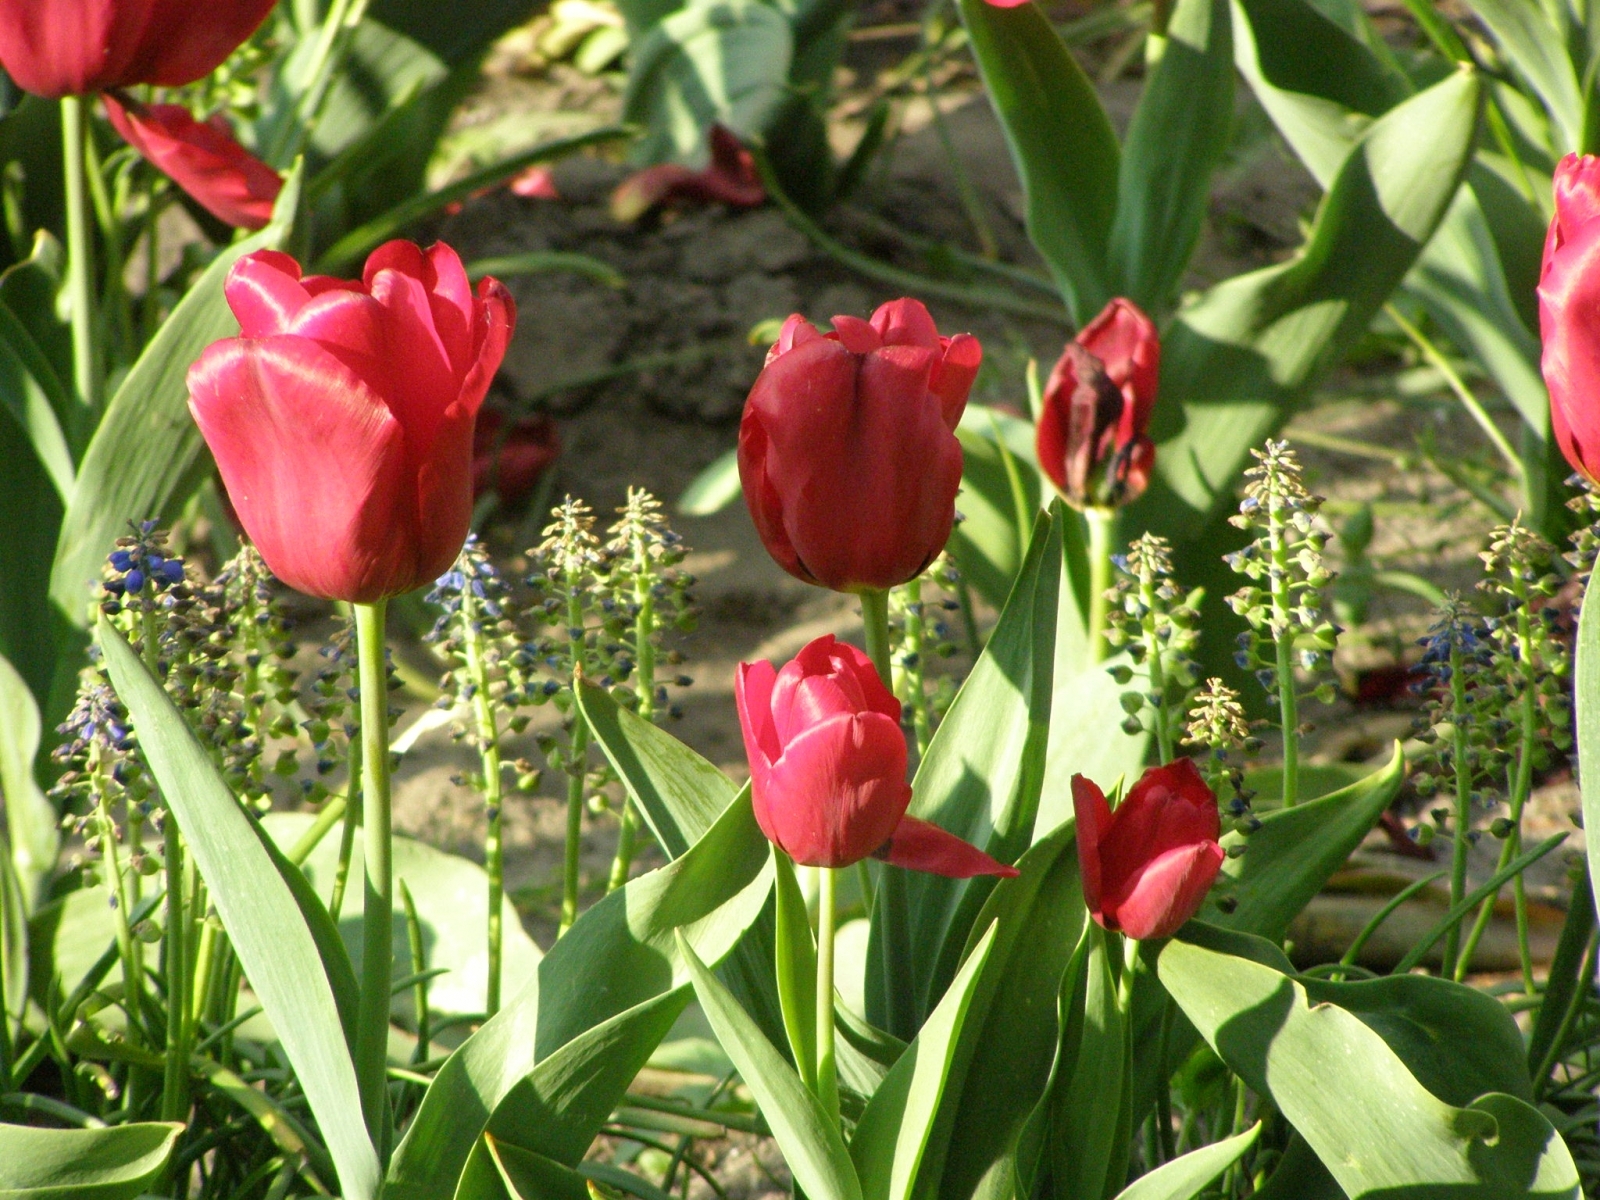 Скачать обои бесплатно Цветы, Растения, Тюльпаны картинка на рабочий стол ПК